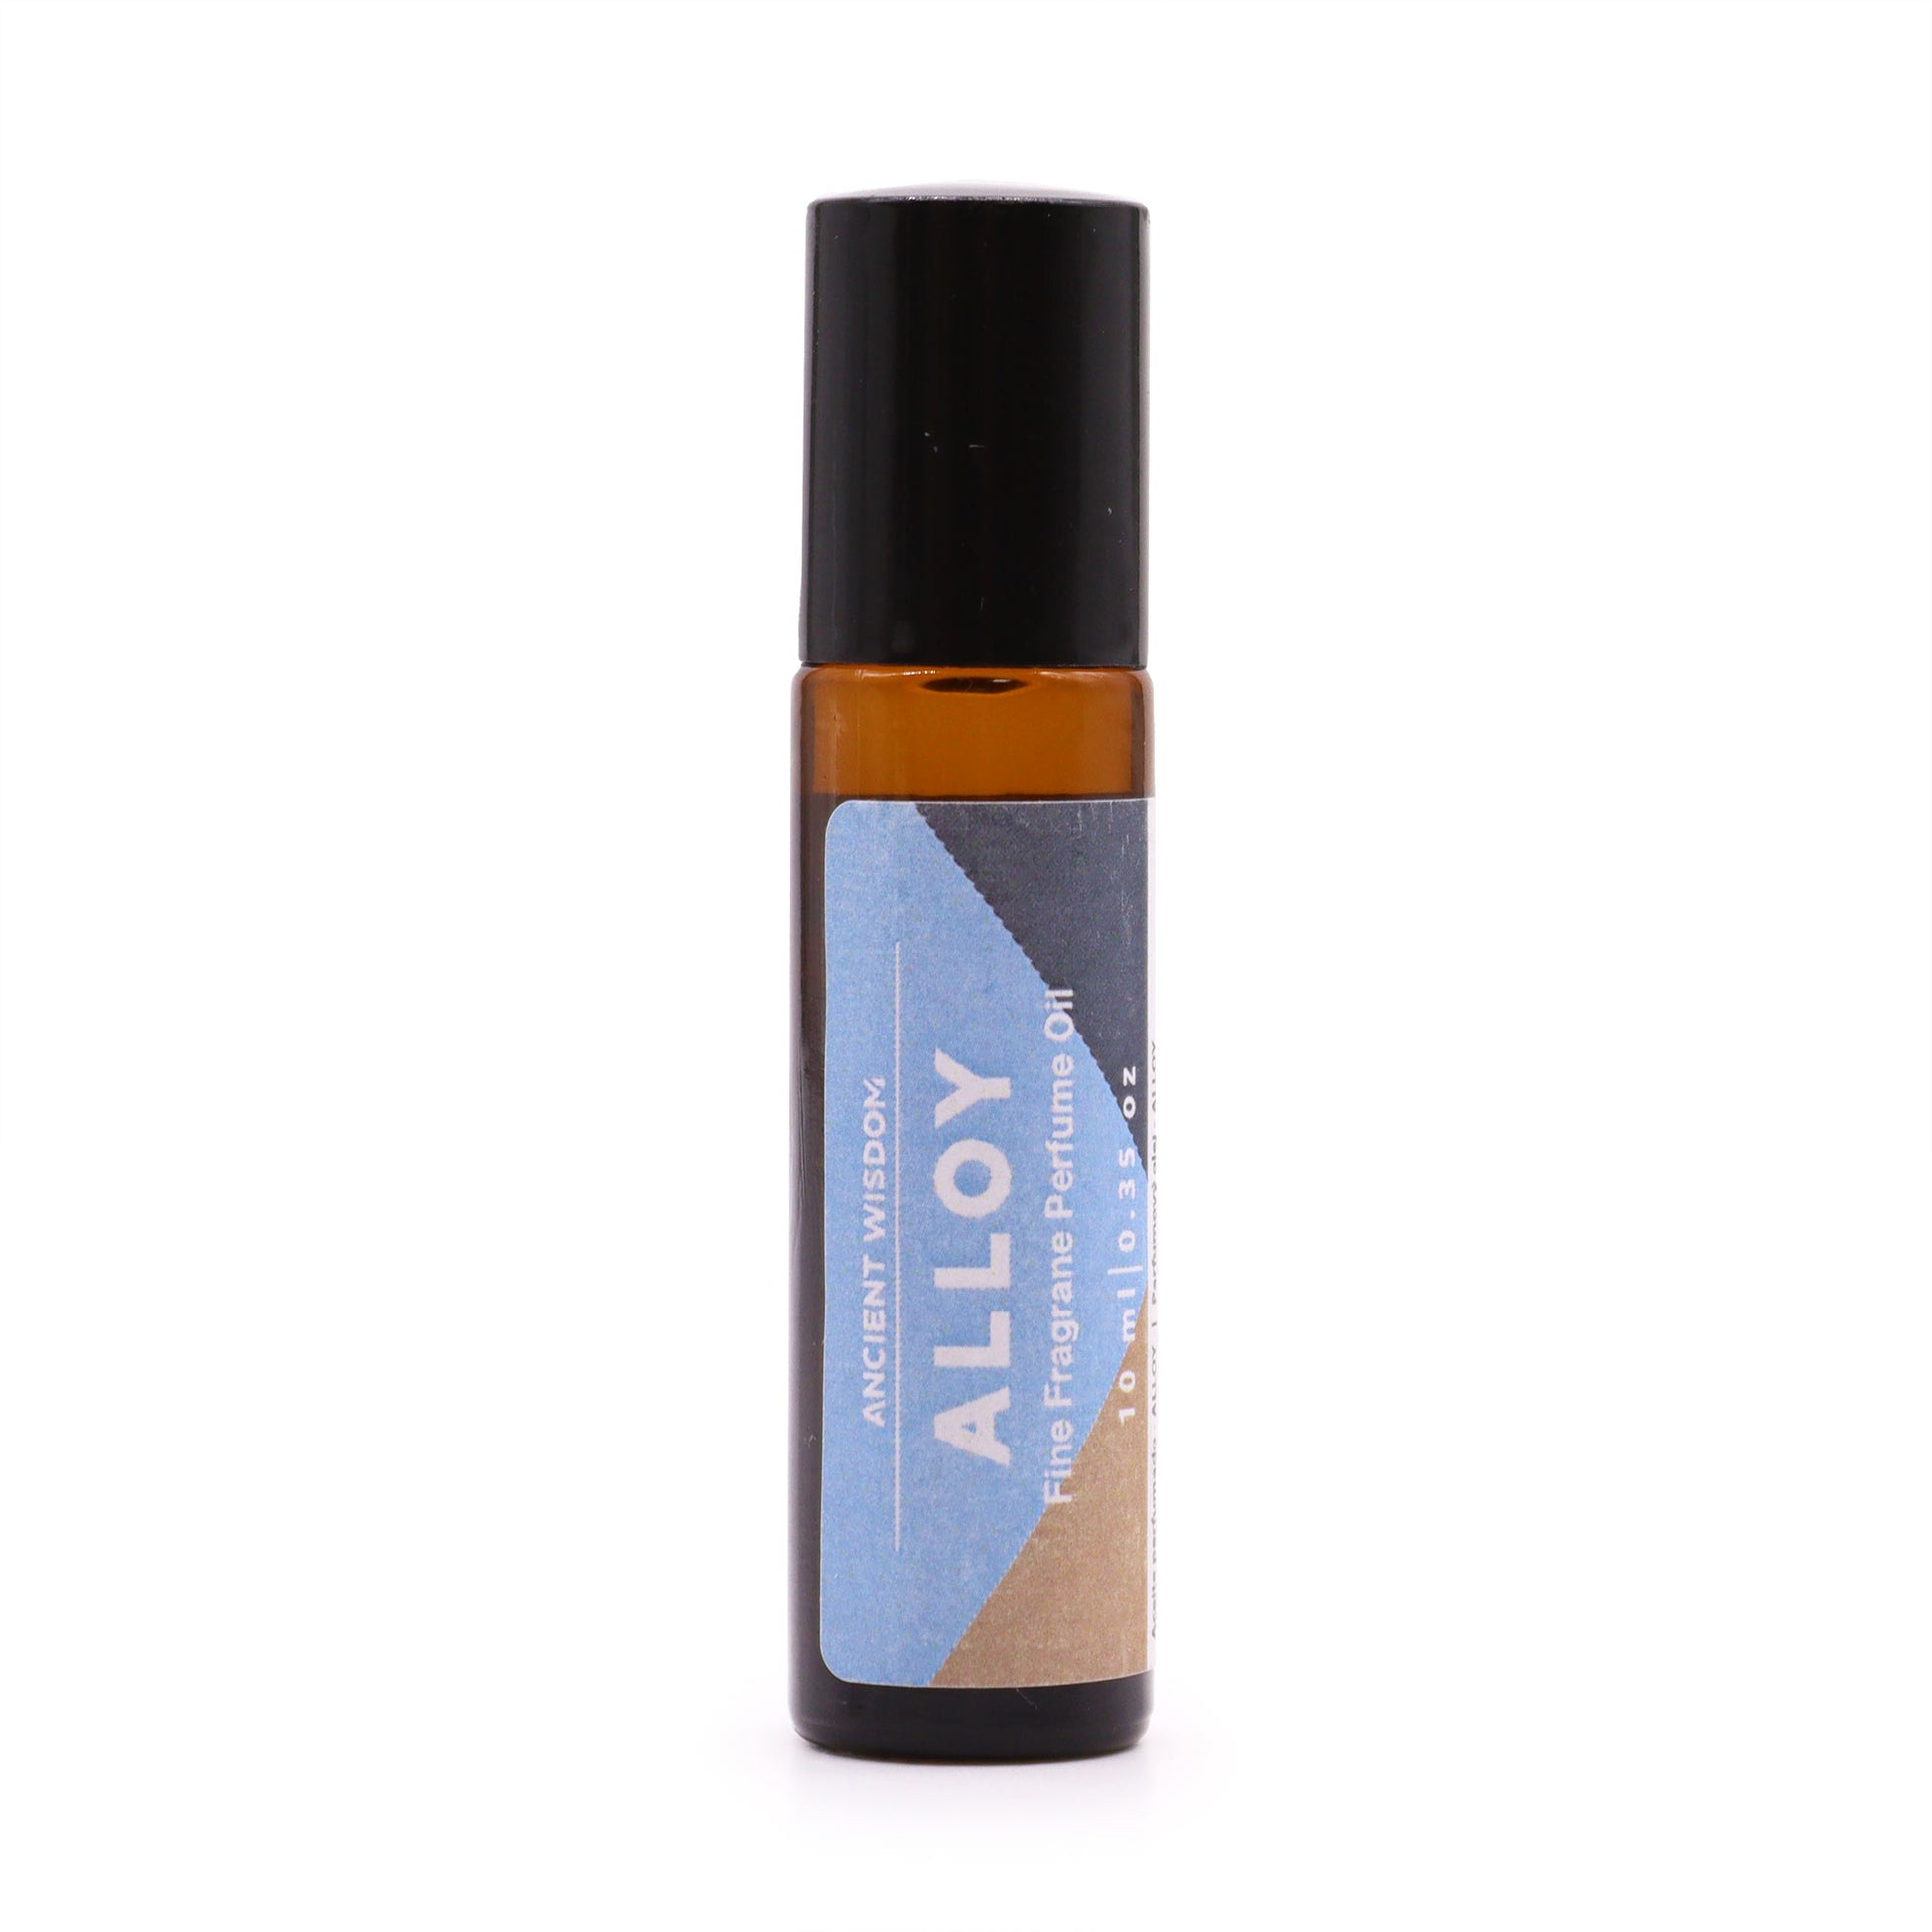 Alloy Fine Fragrance Perfume Oil 10ml - Kaftans direct